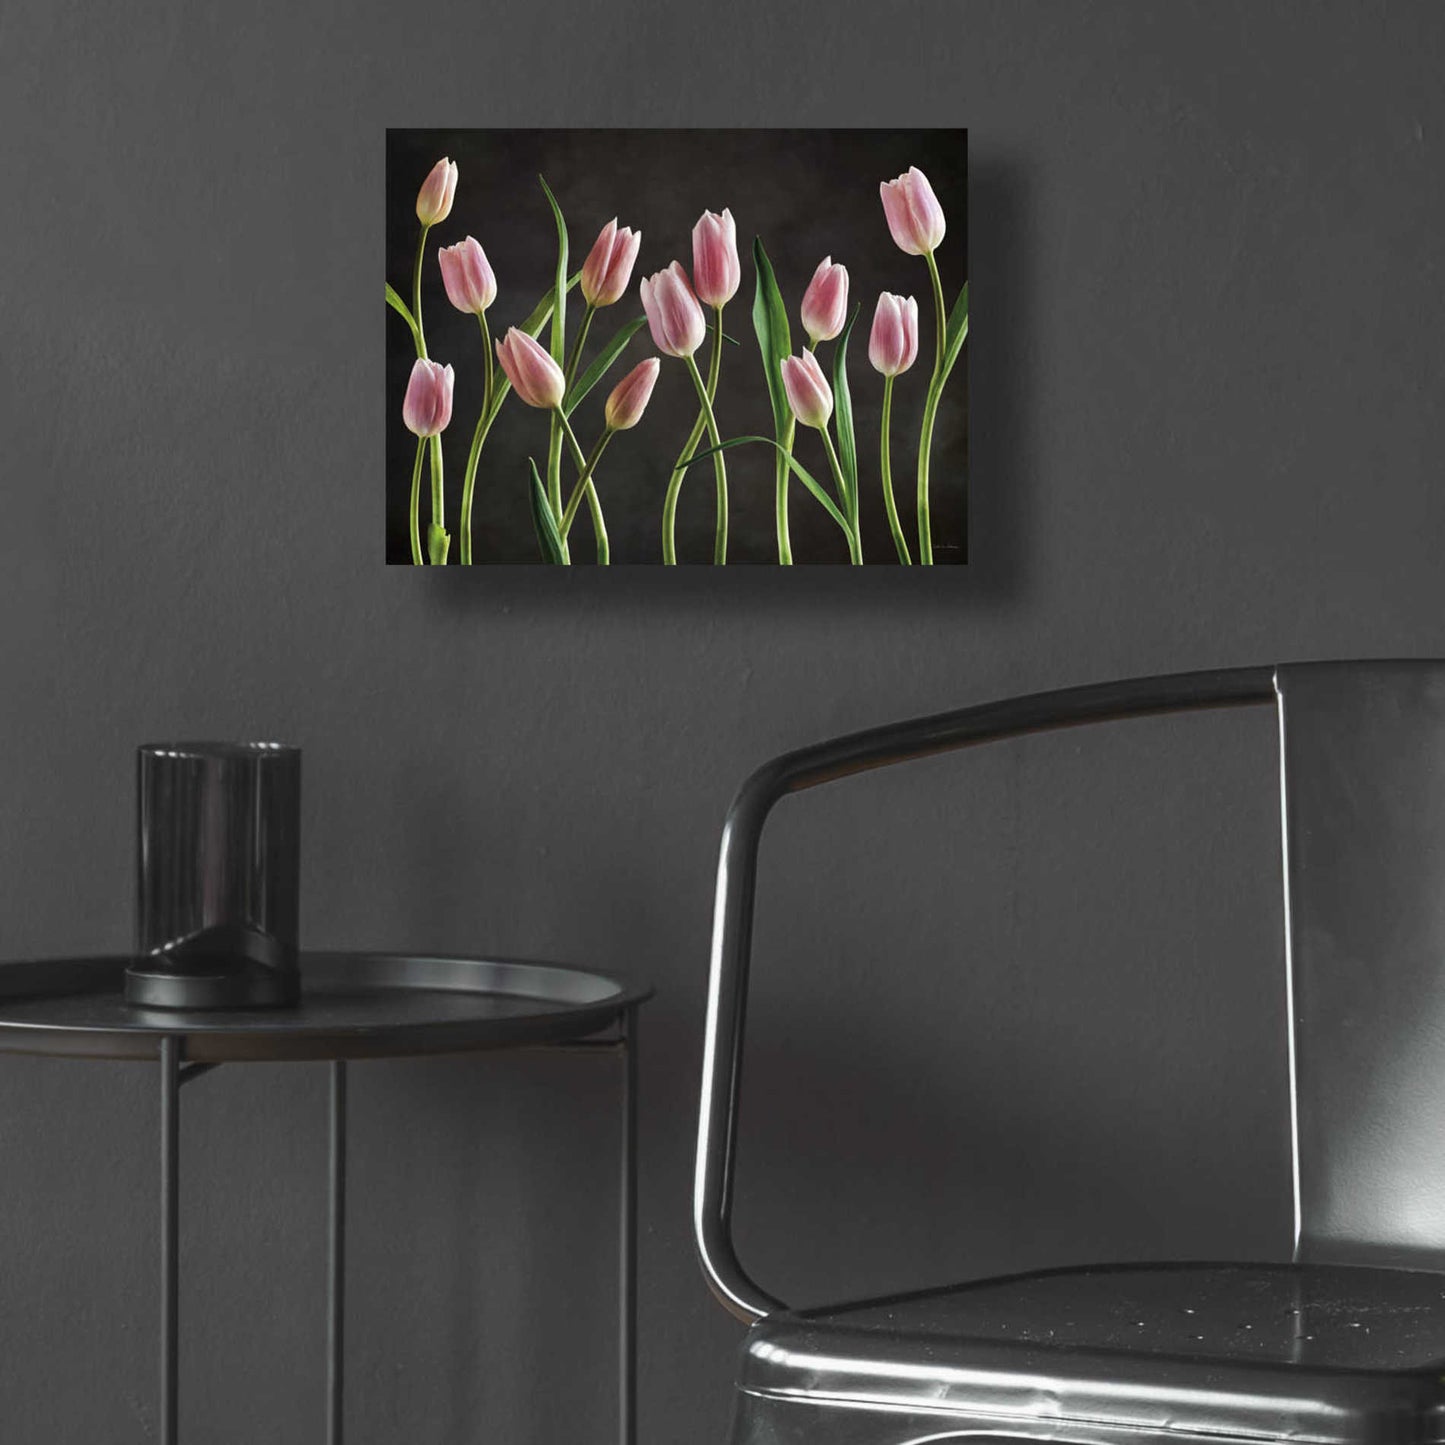 Epic Art 'Spring Tulips IX' by Debra Van Swearingen, Acrylic Glass Wall Art,16x12